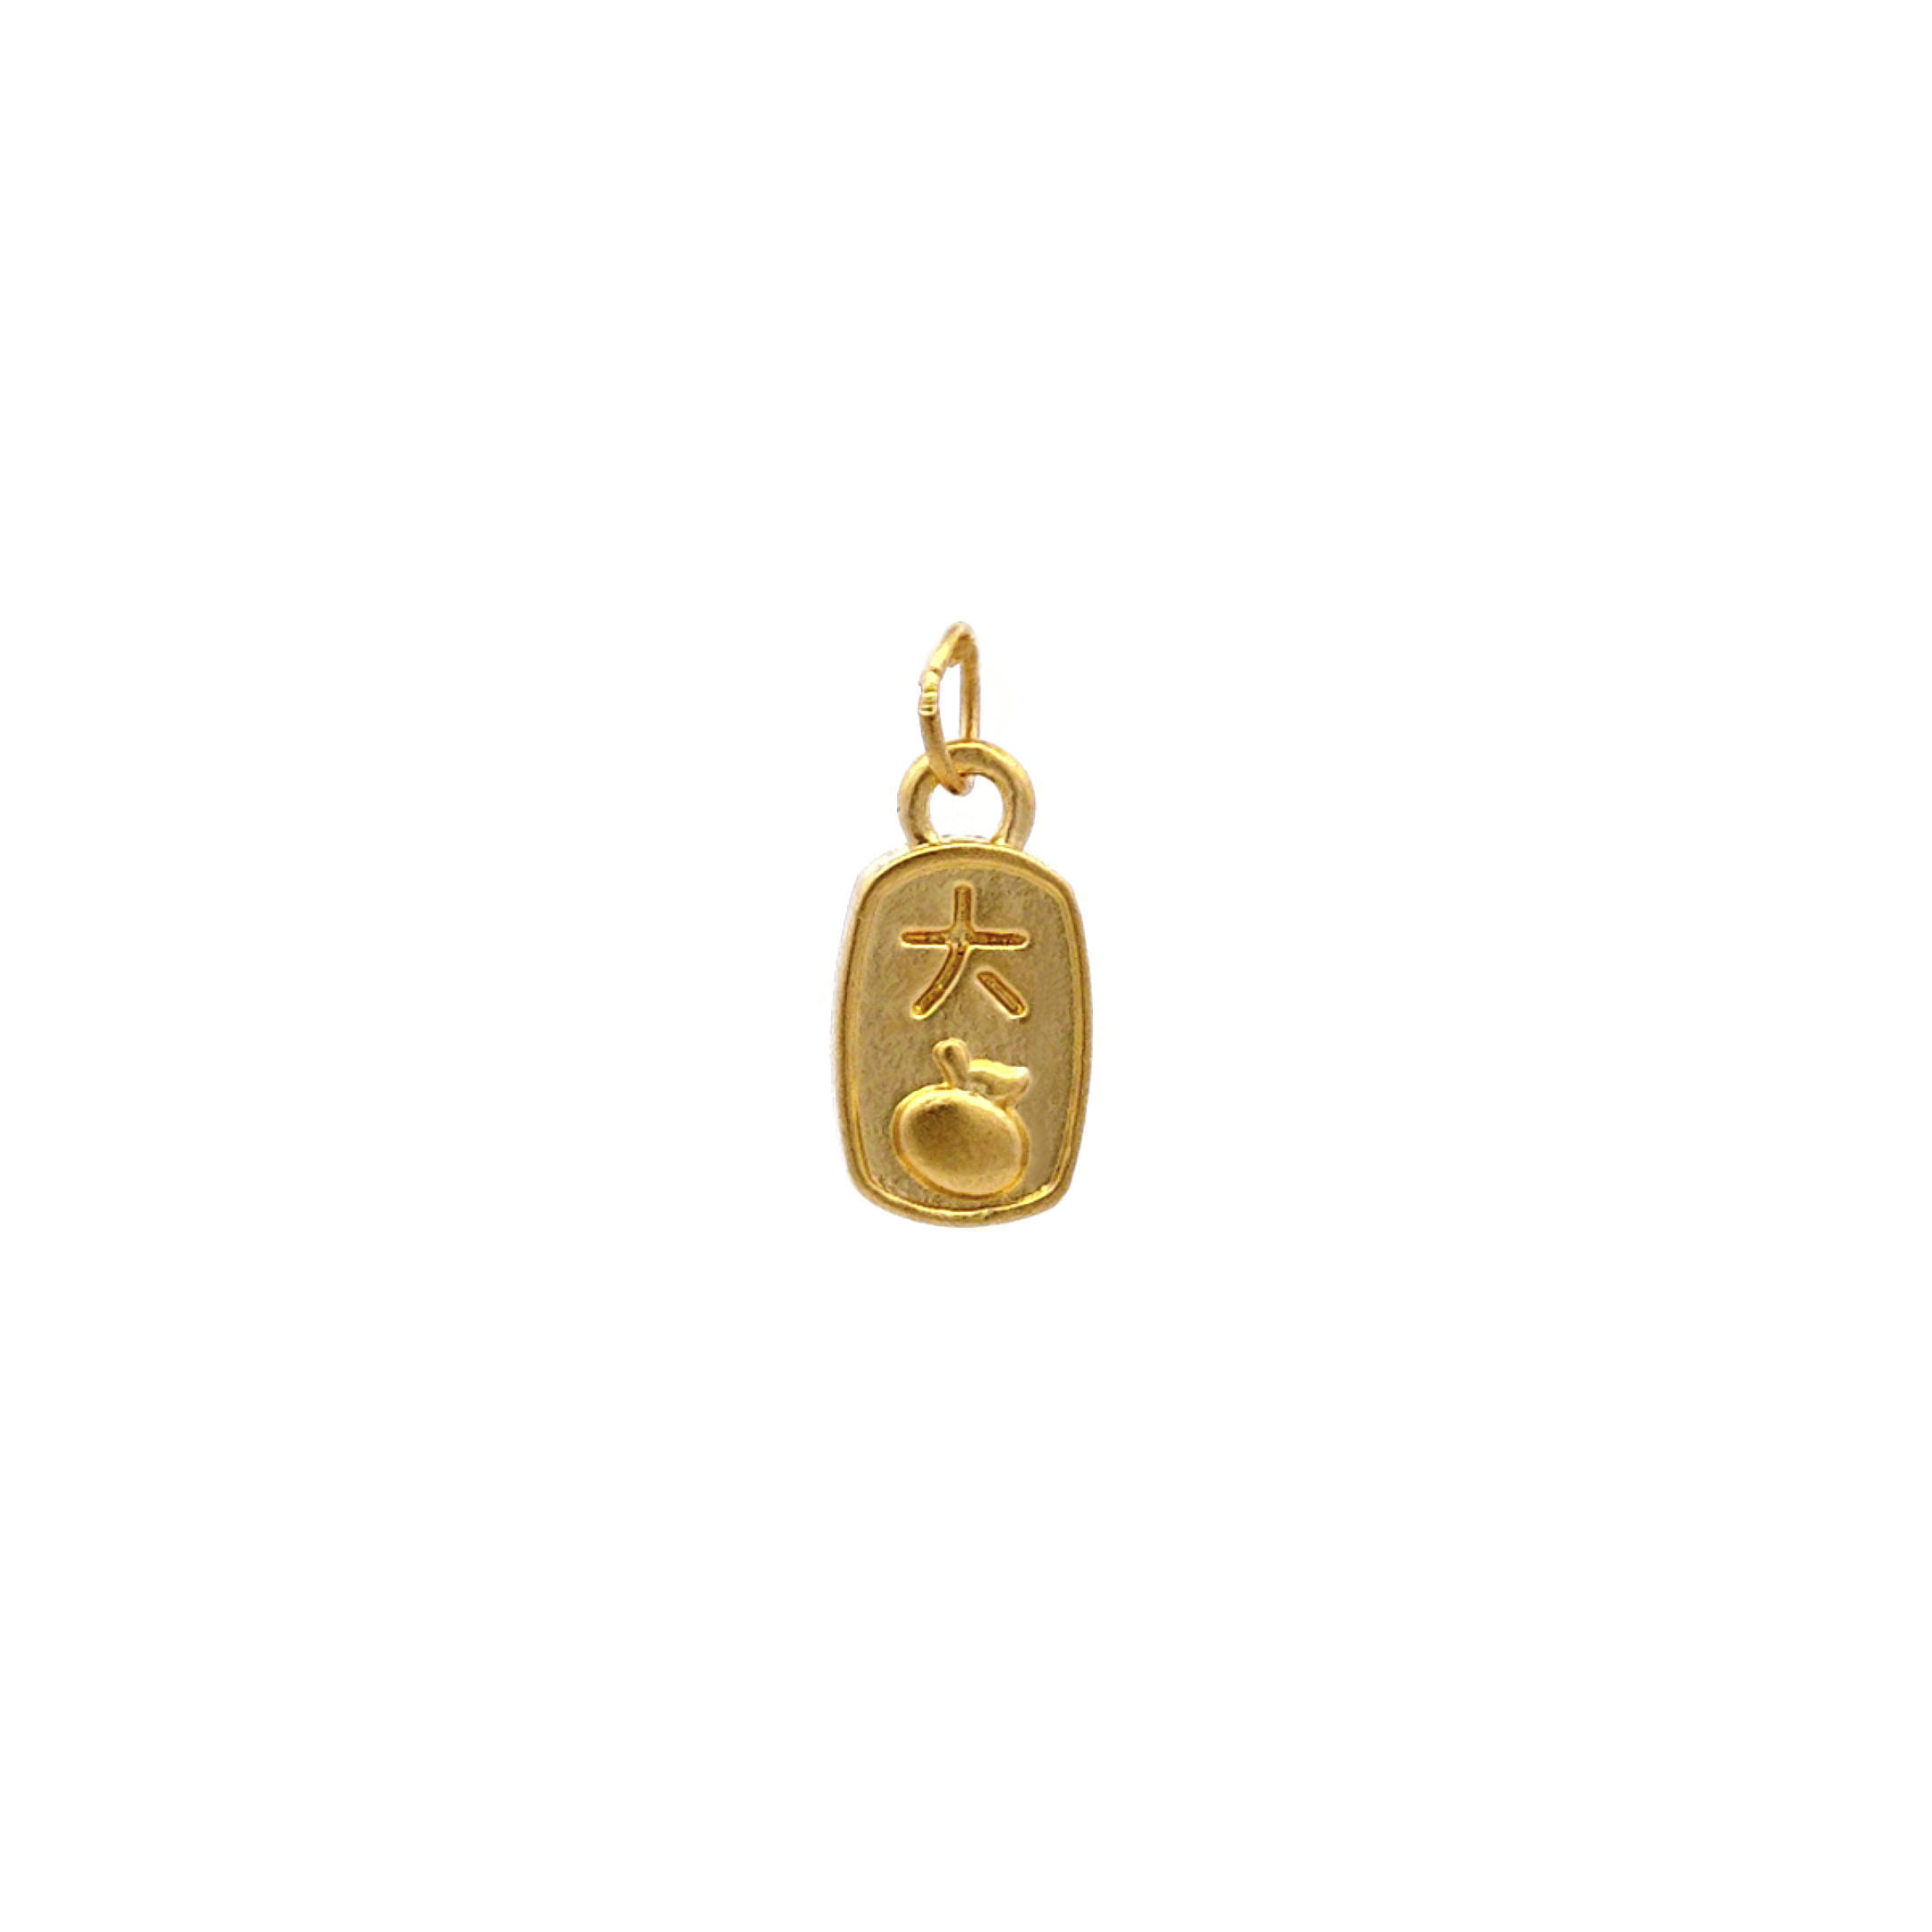 TIANSI 999 (24K) Gold Good Luck Pendant